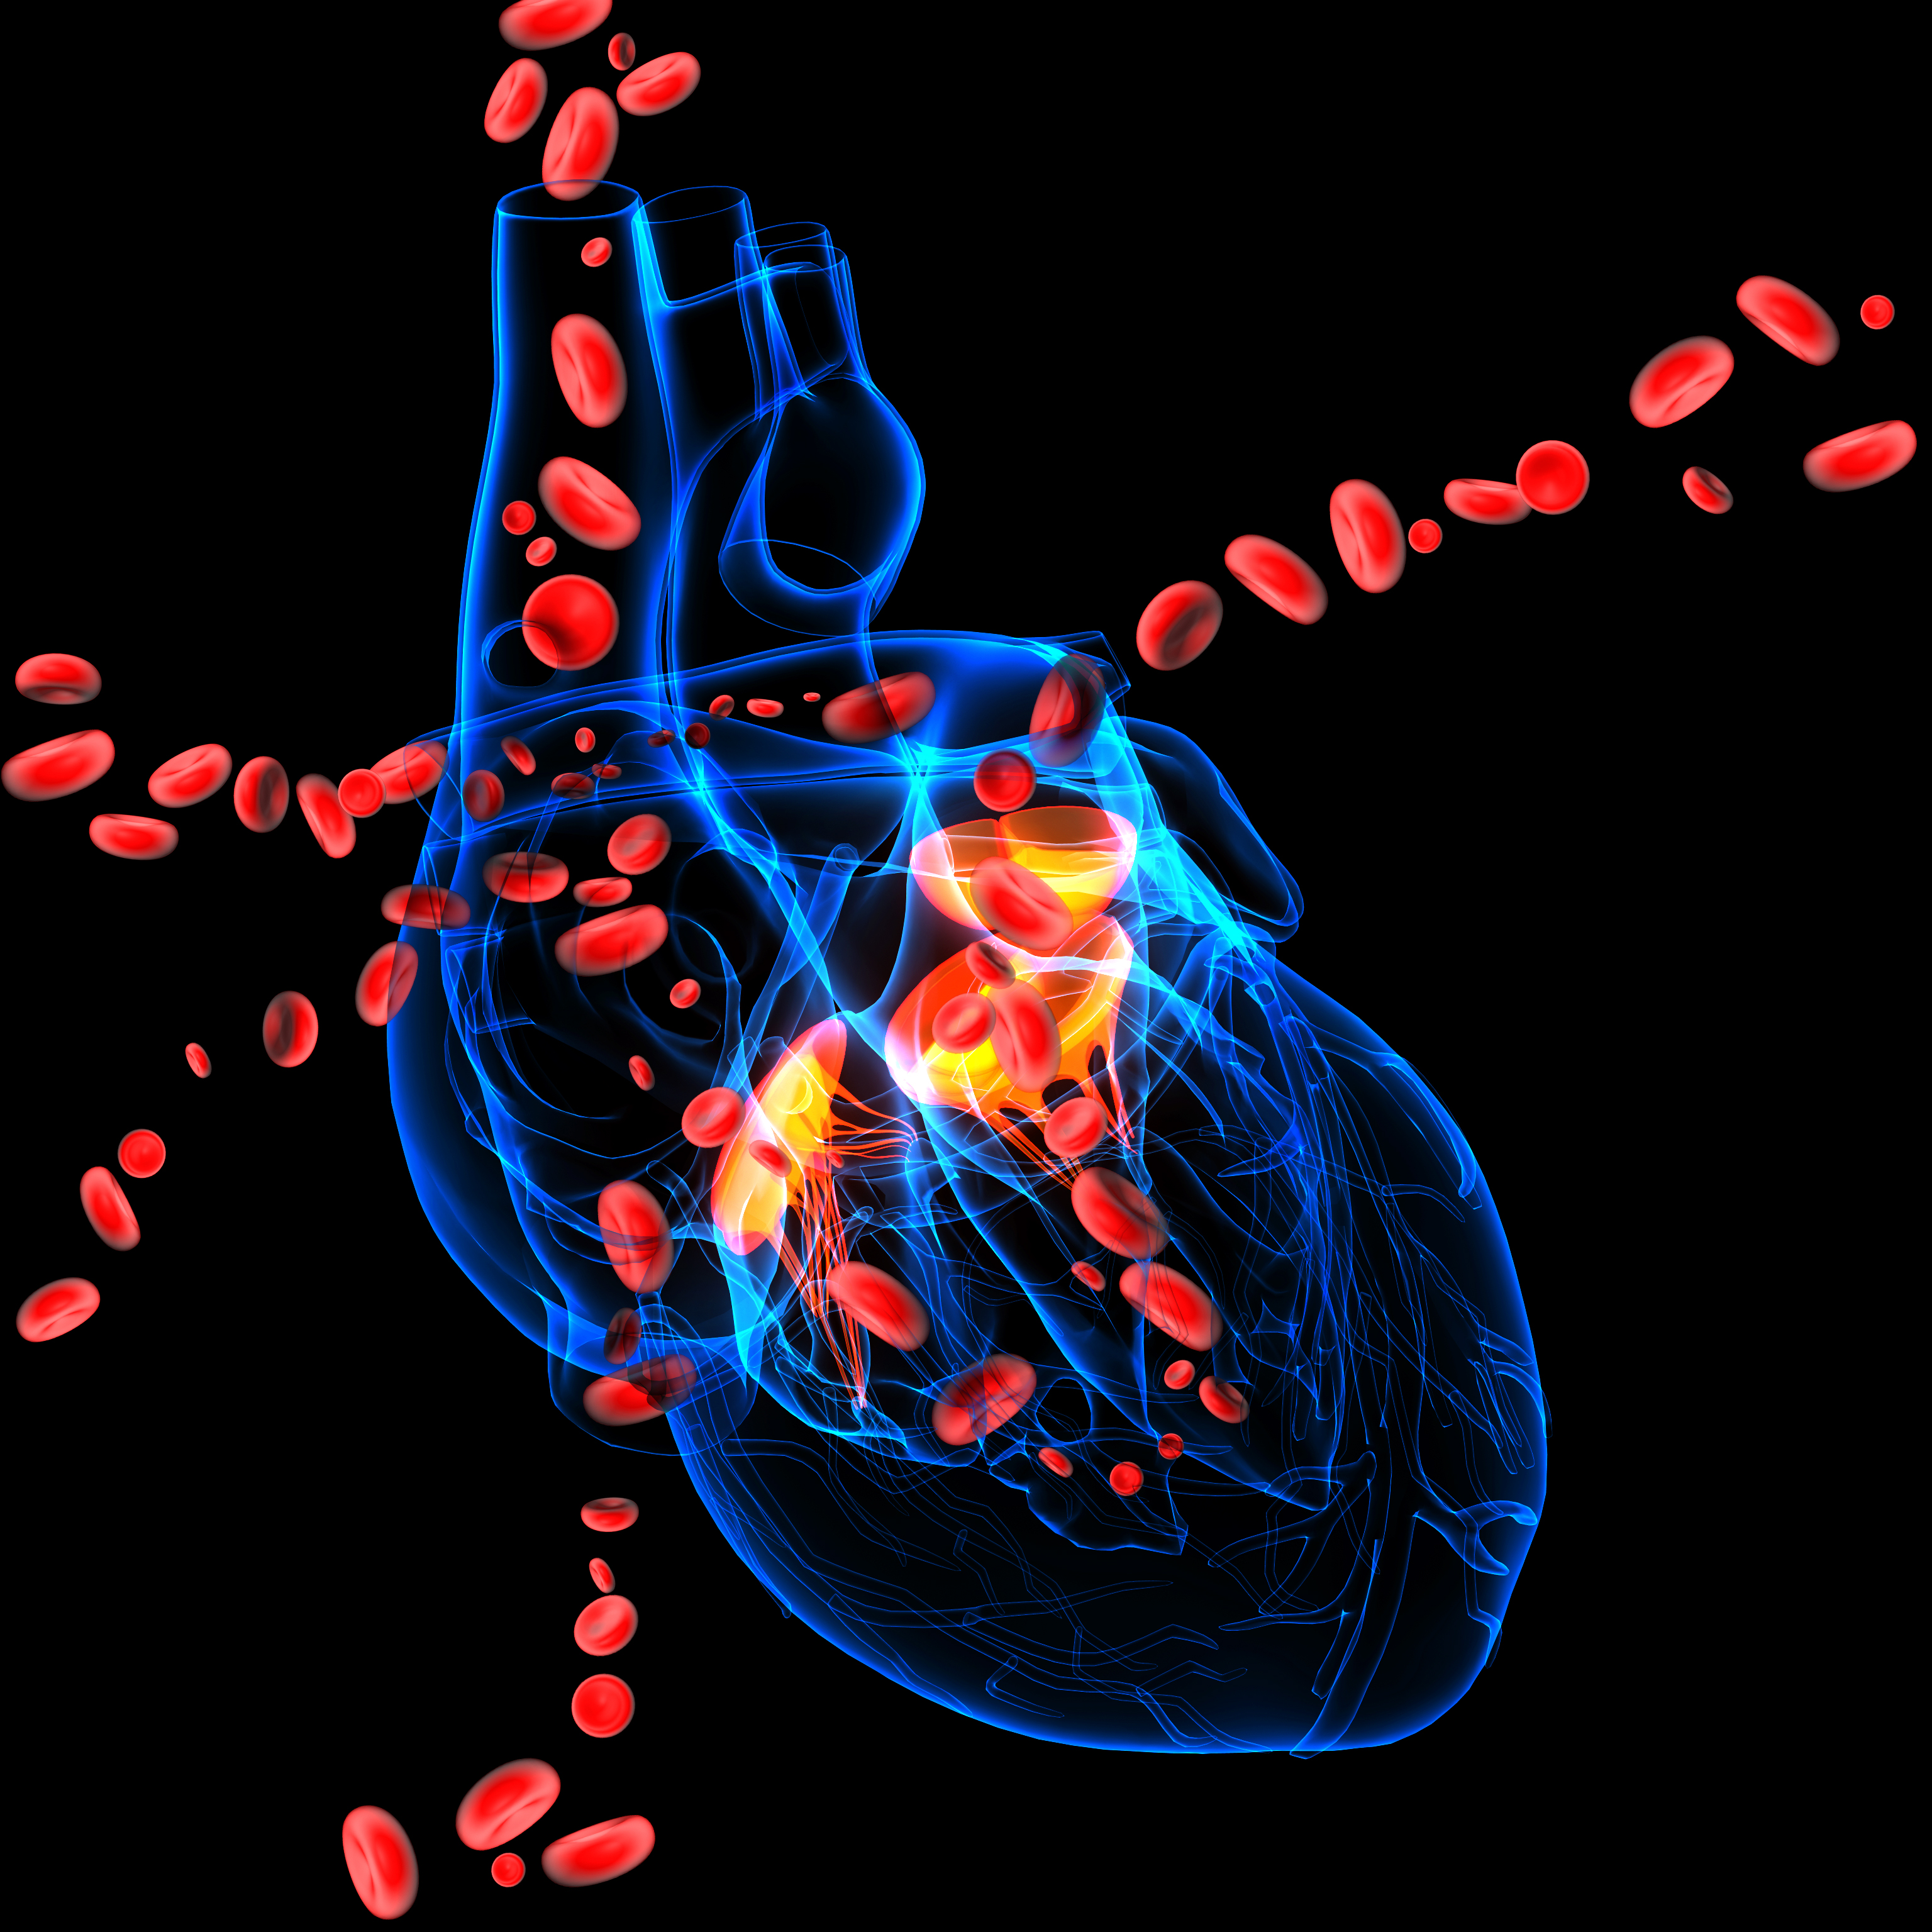 반투명한 심장이미지 위로 혈액이 순환하는 모습을 표현한 3D 이미지